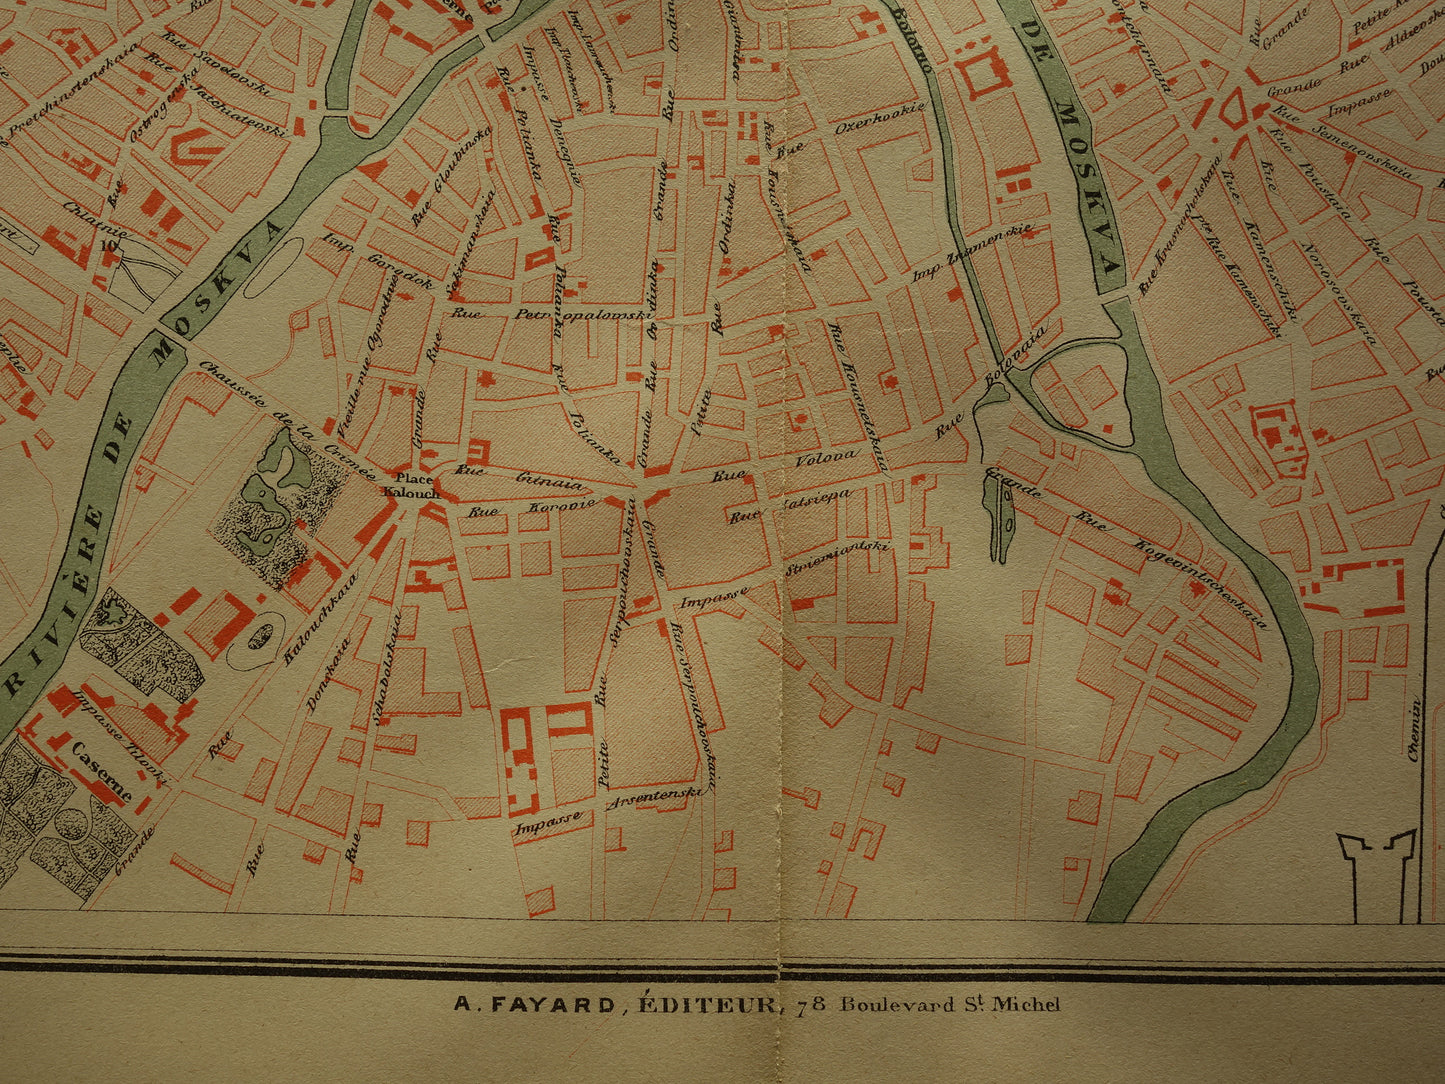 MOSKOU Oude kaart van Moskou Rusland uit 1879 - beschadigd - originele historische plattegrond antieke kaarten